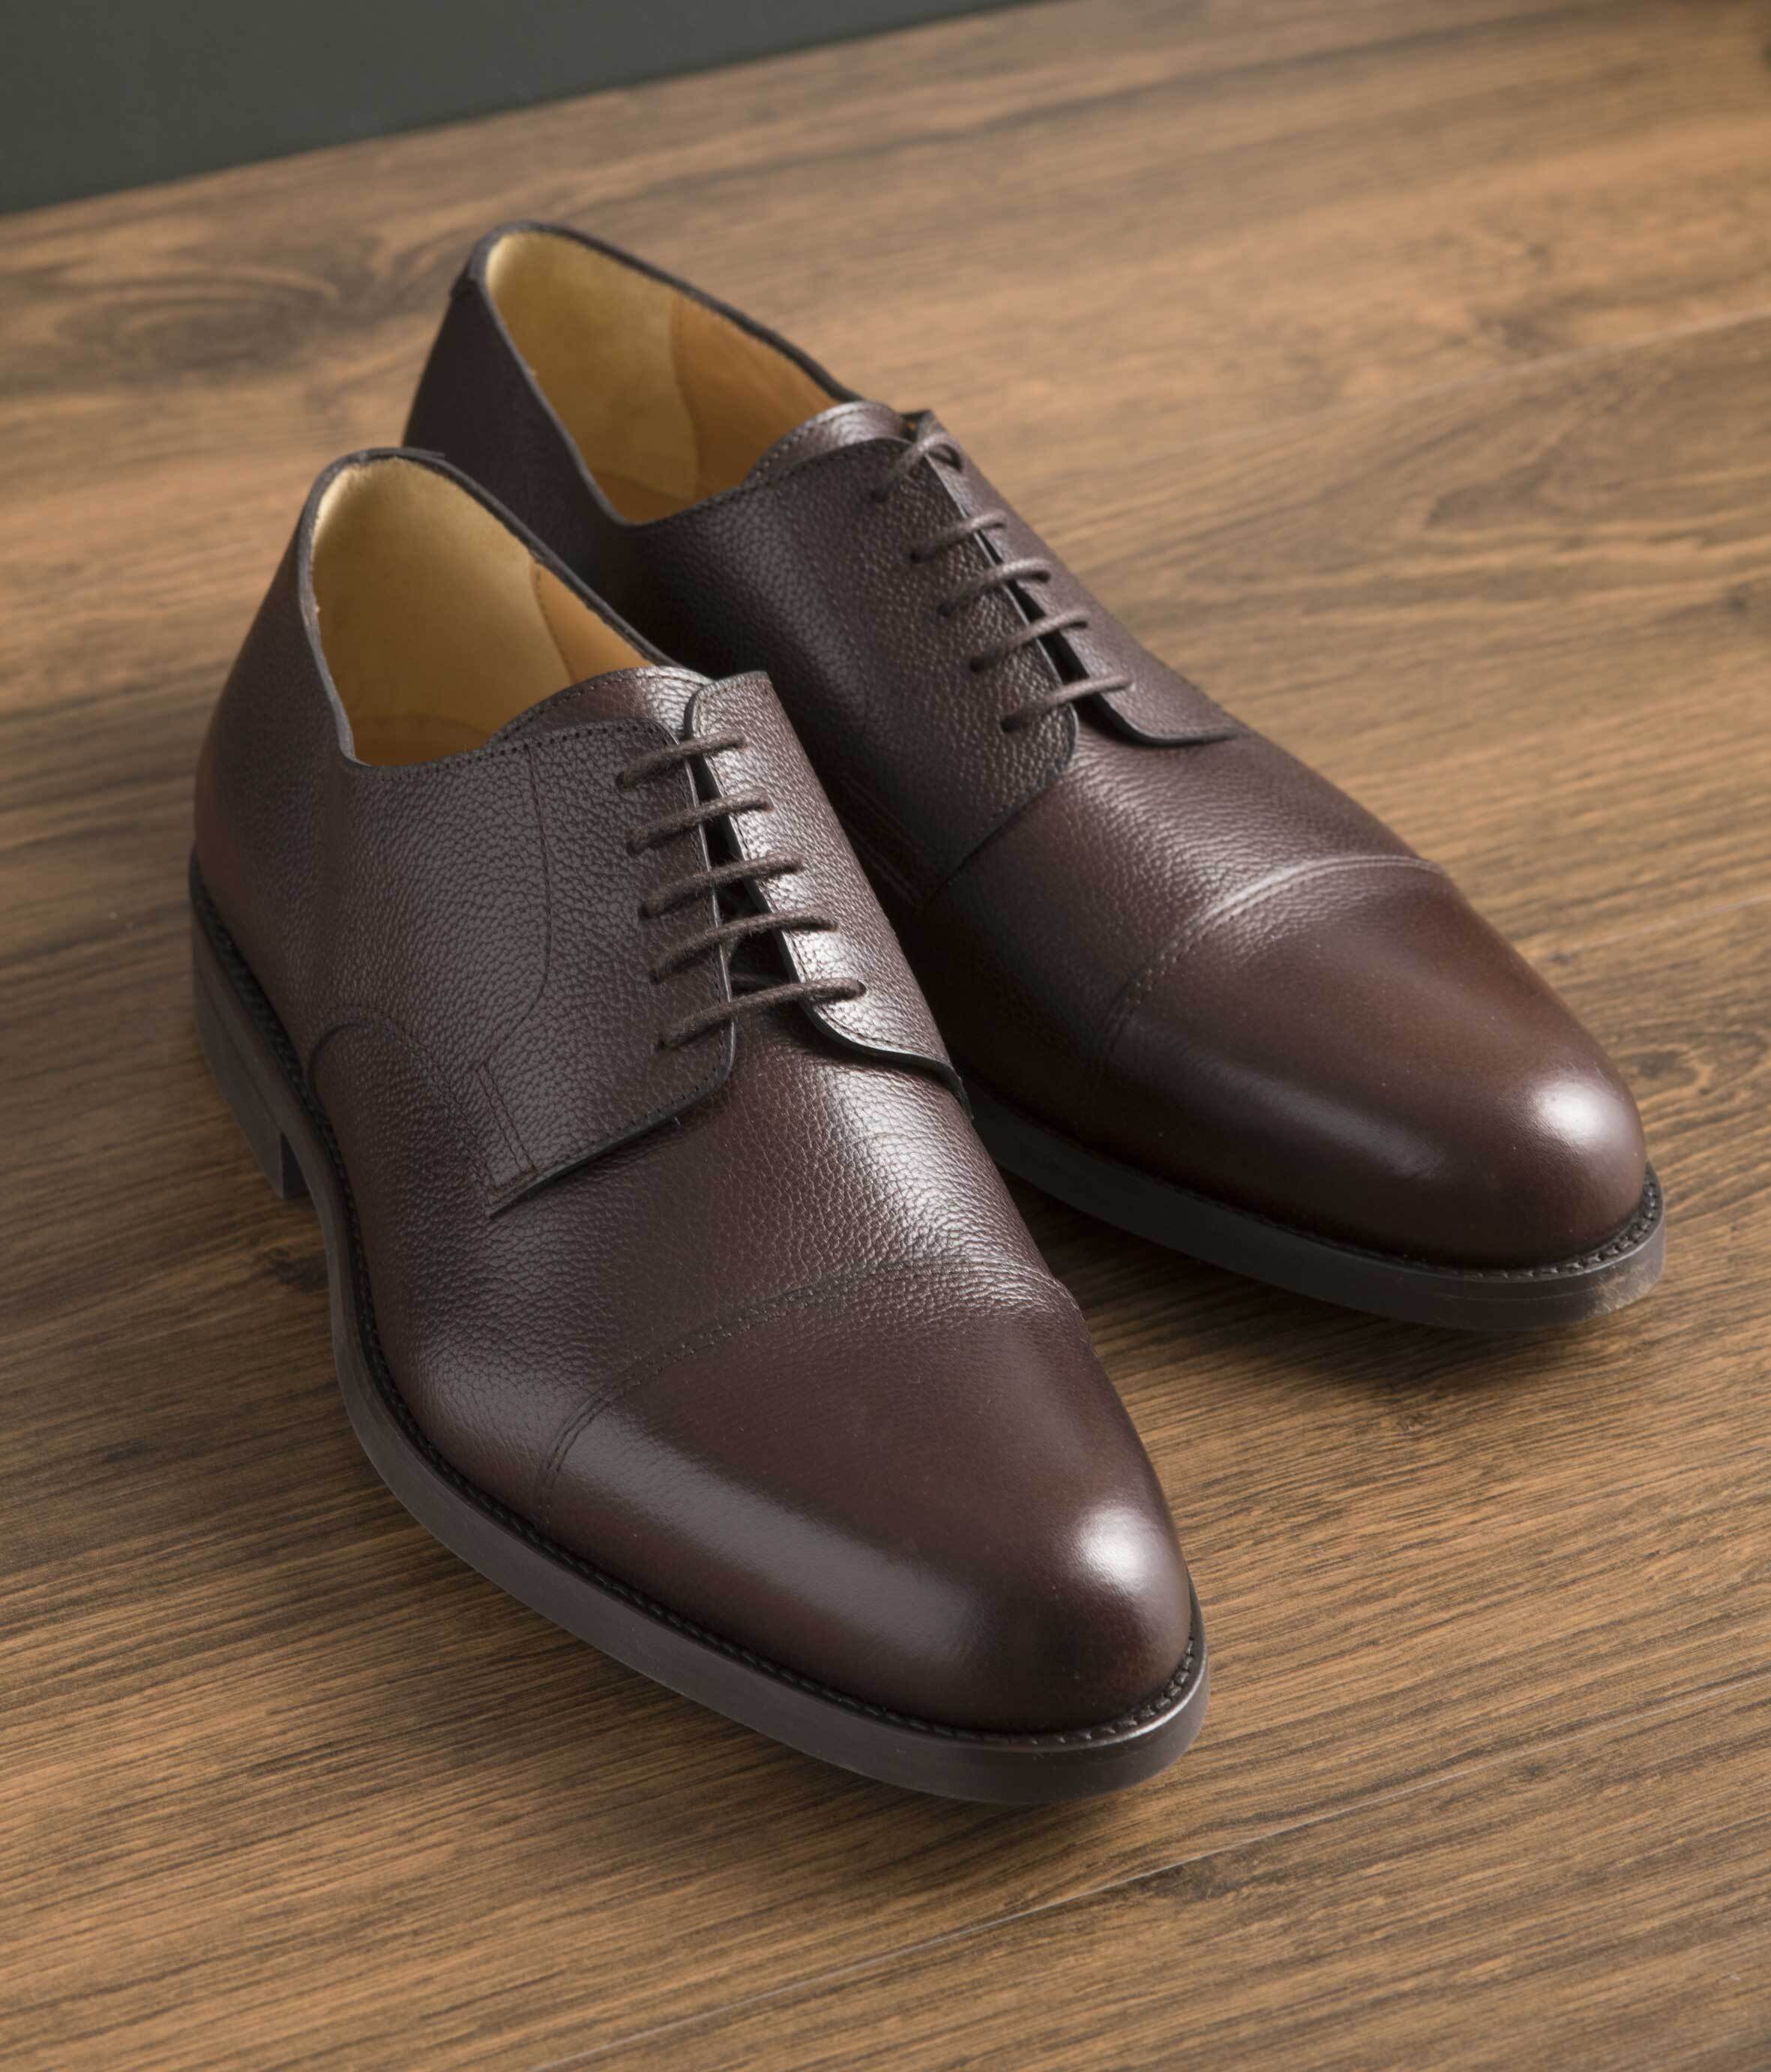 Chaussures homme : les 6 modèles du dressing